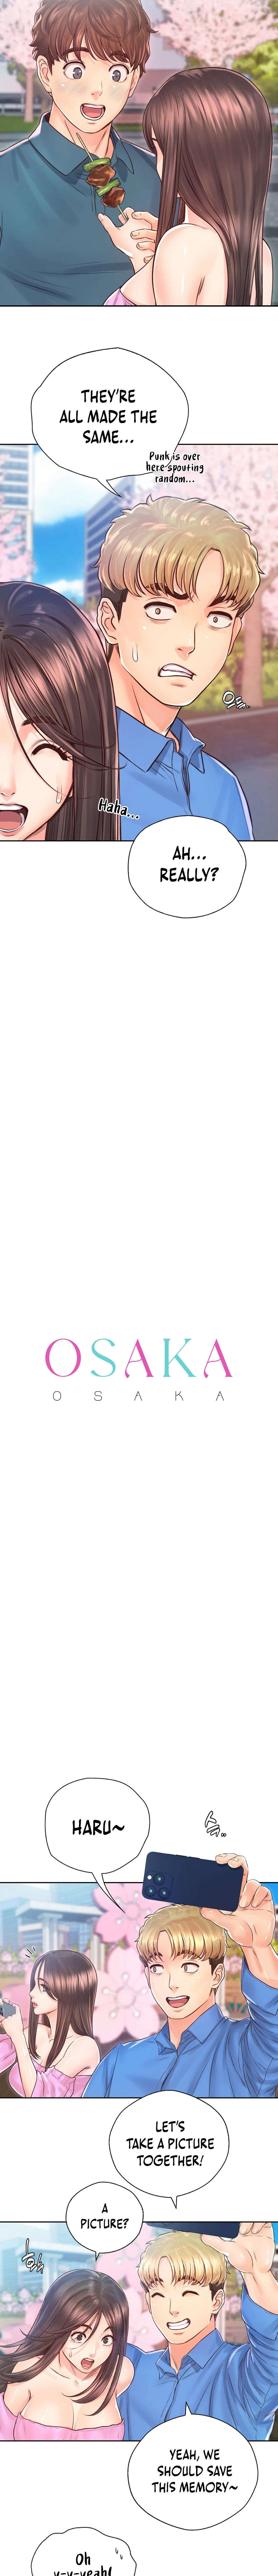 The image Osaka - Chapter 23 - 04c4dd692854dd64ad - ManhwaManga.io